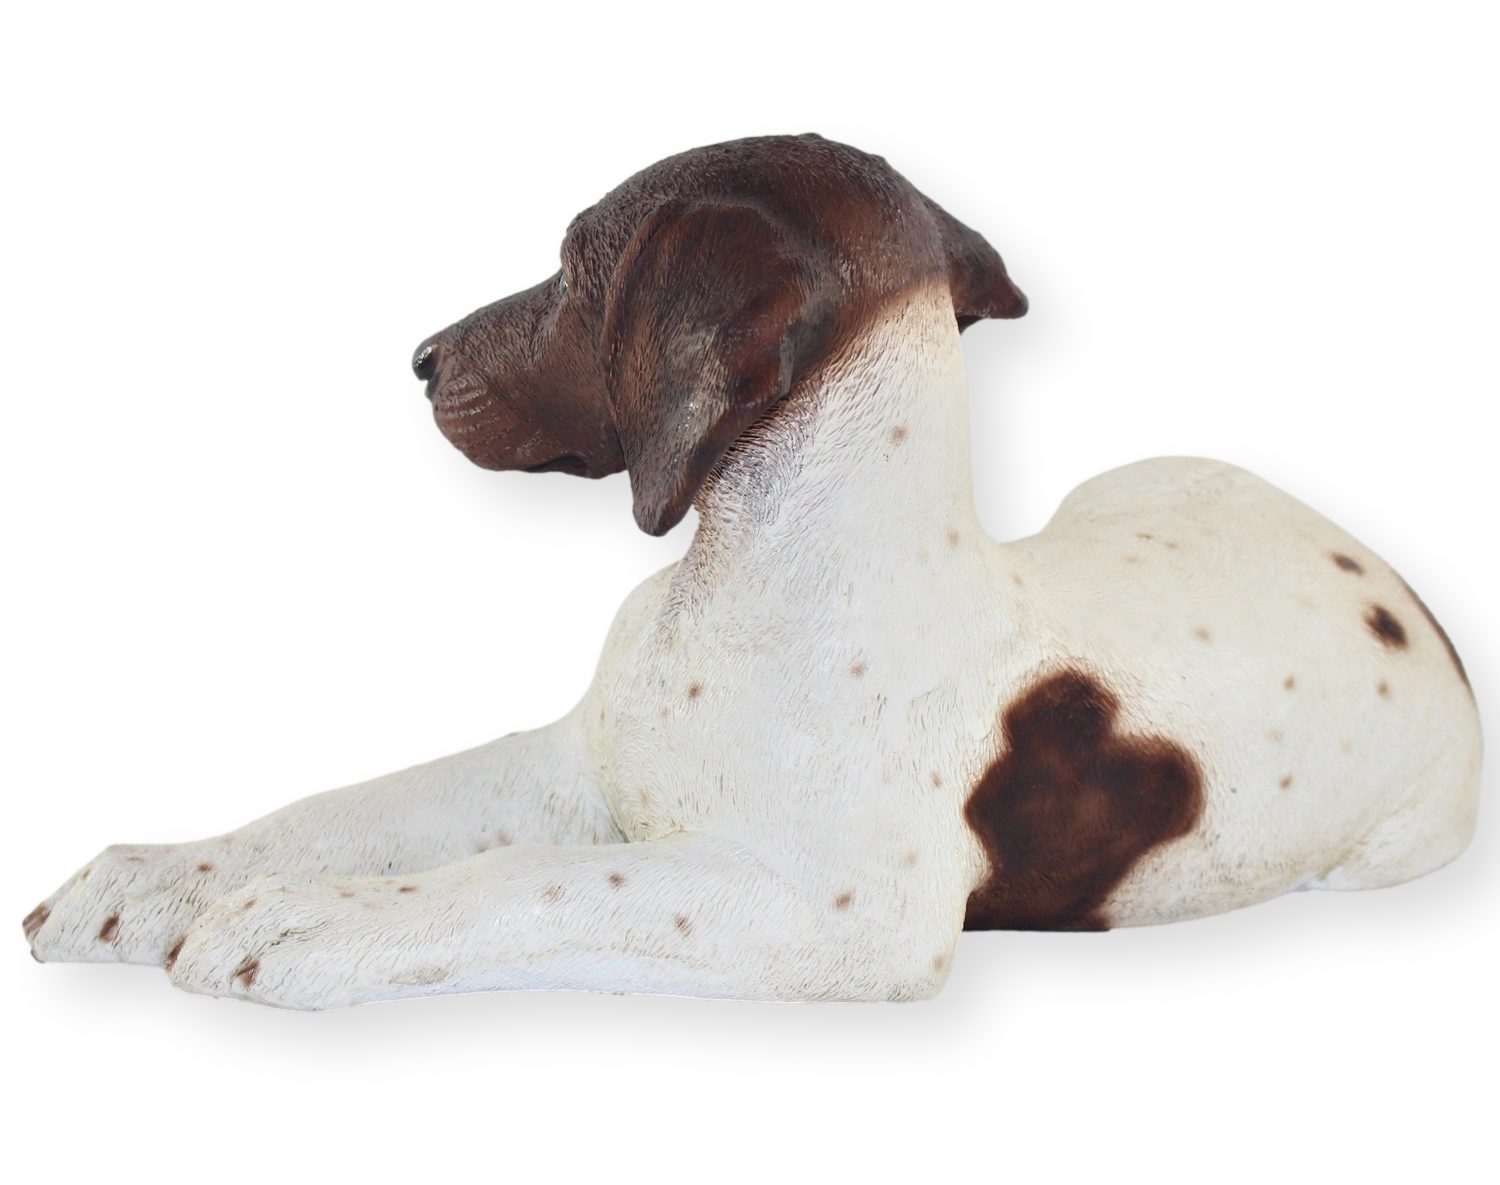 Figur H liegend cm Castagna Hundefigur braun gefleckt Tierfigur Castagna Pointer 18 englischer Hund Resin Kollektion